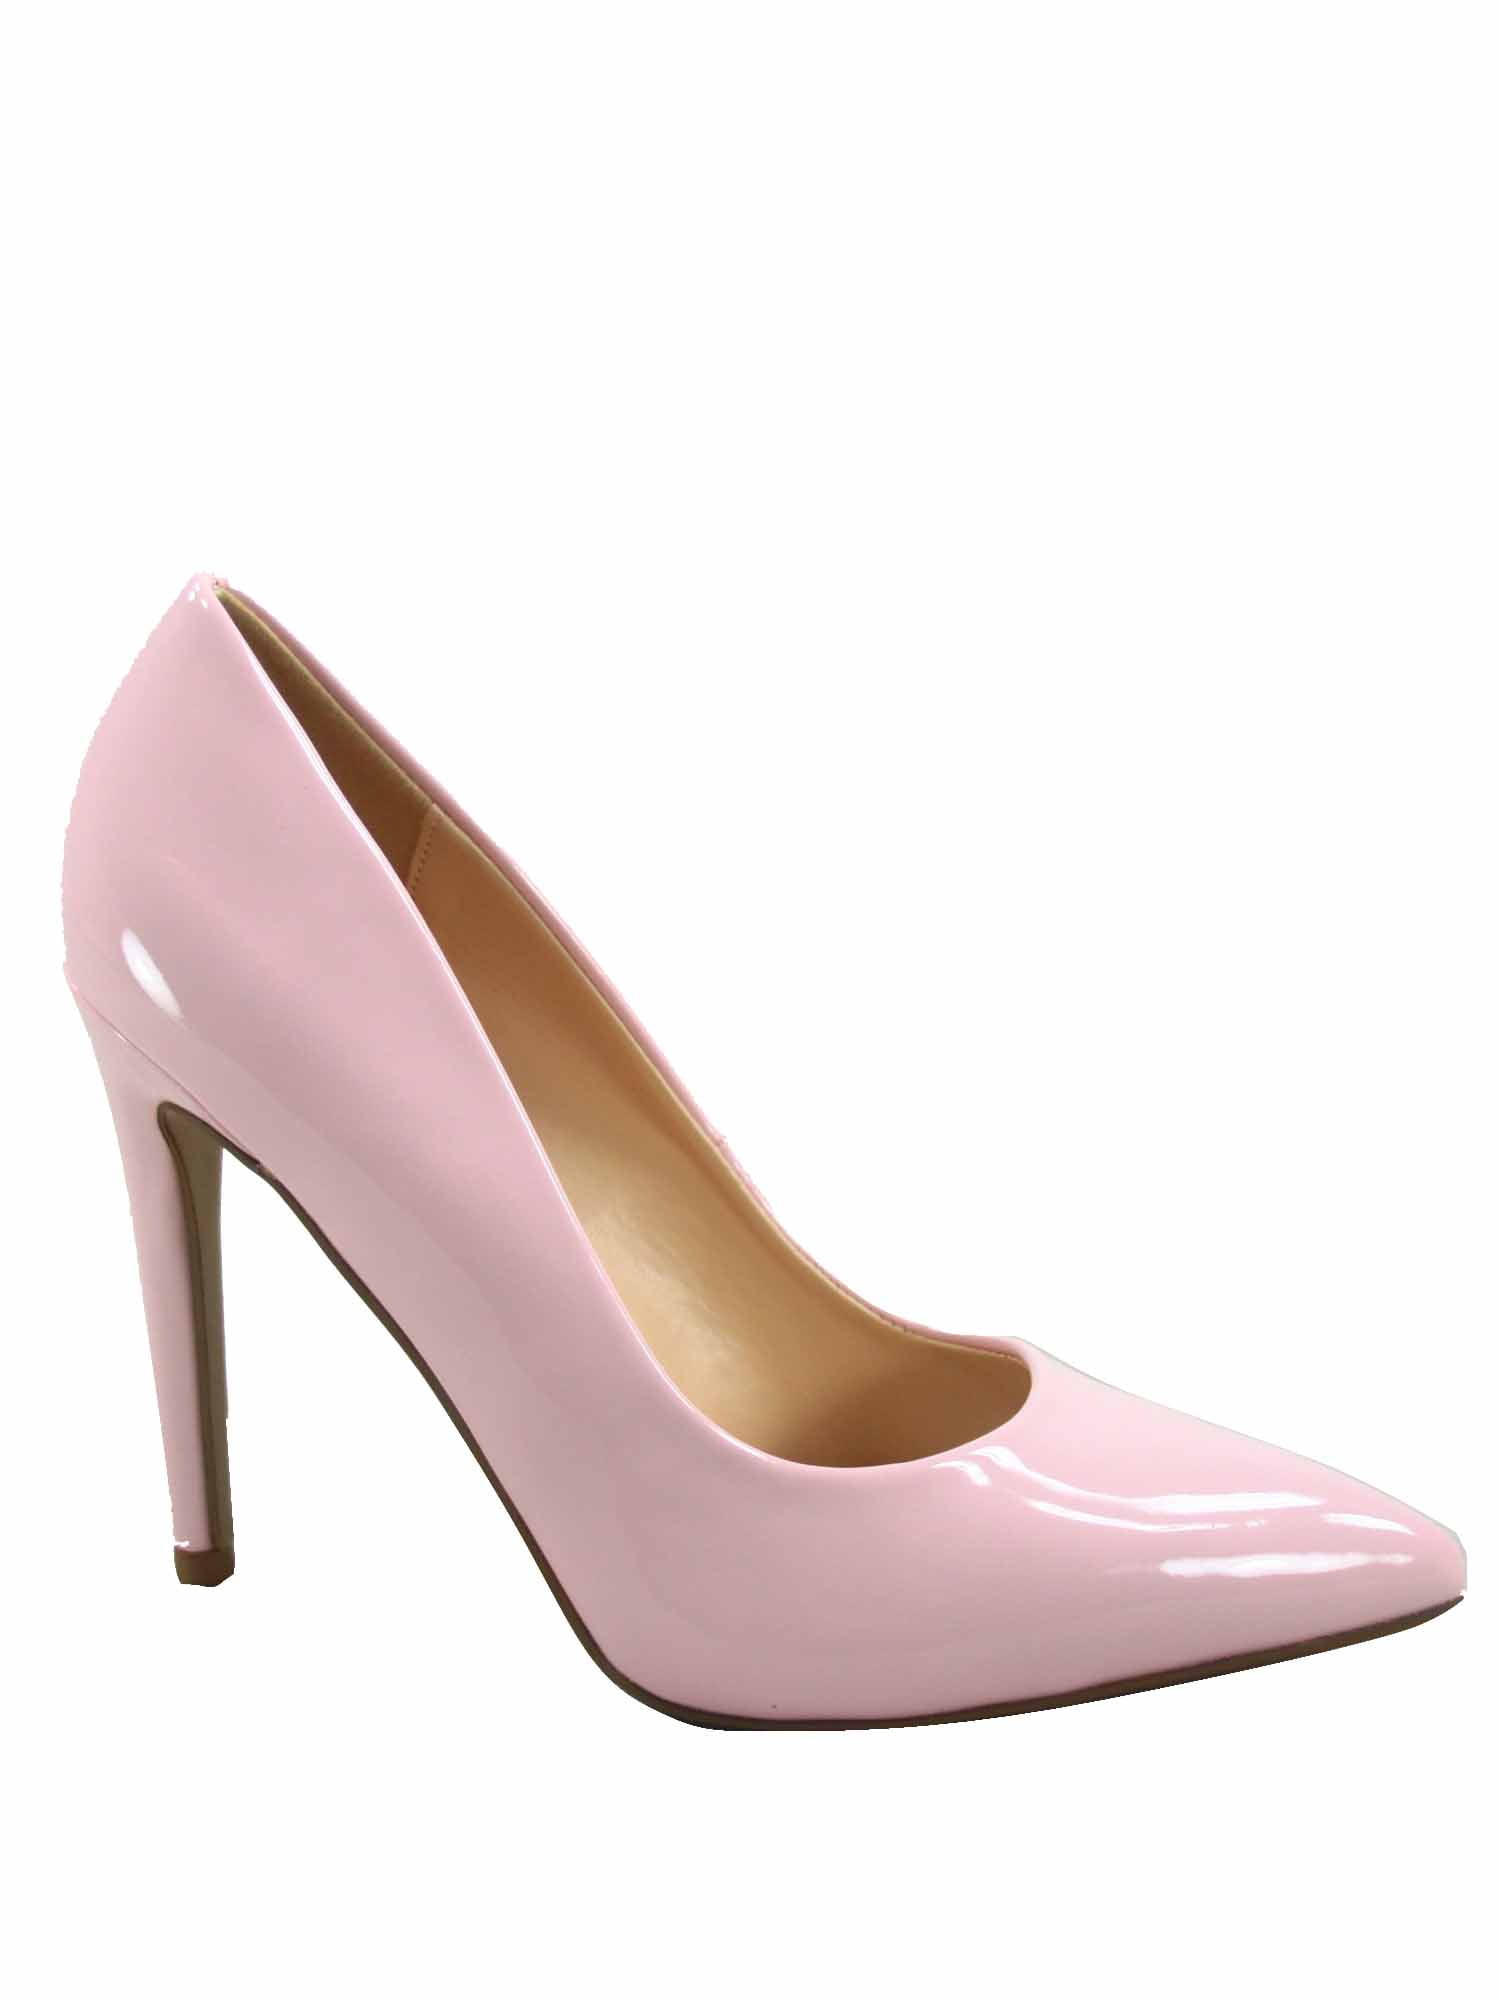 toestep Women Pink Heels - Buy toestep Women Pink Heels Online at Best  Price - Shop Online for Footwears in India | Flipkart.com